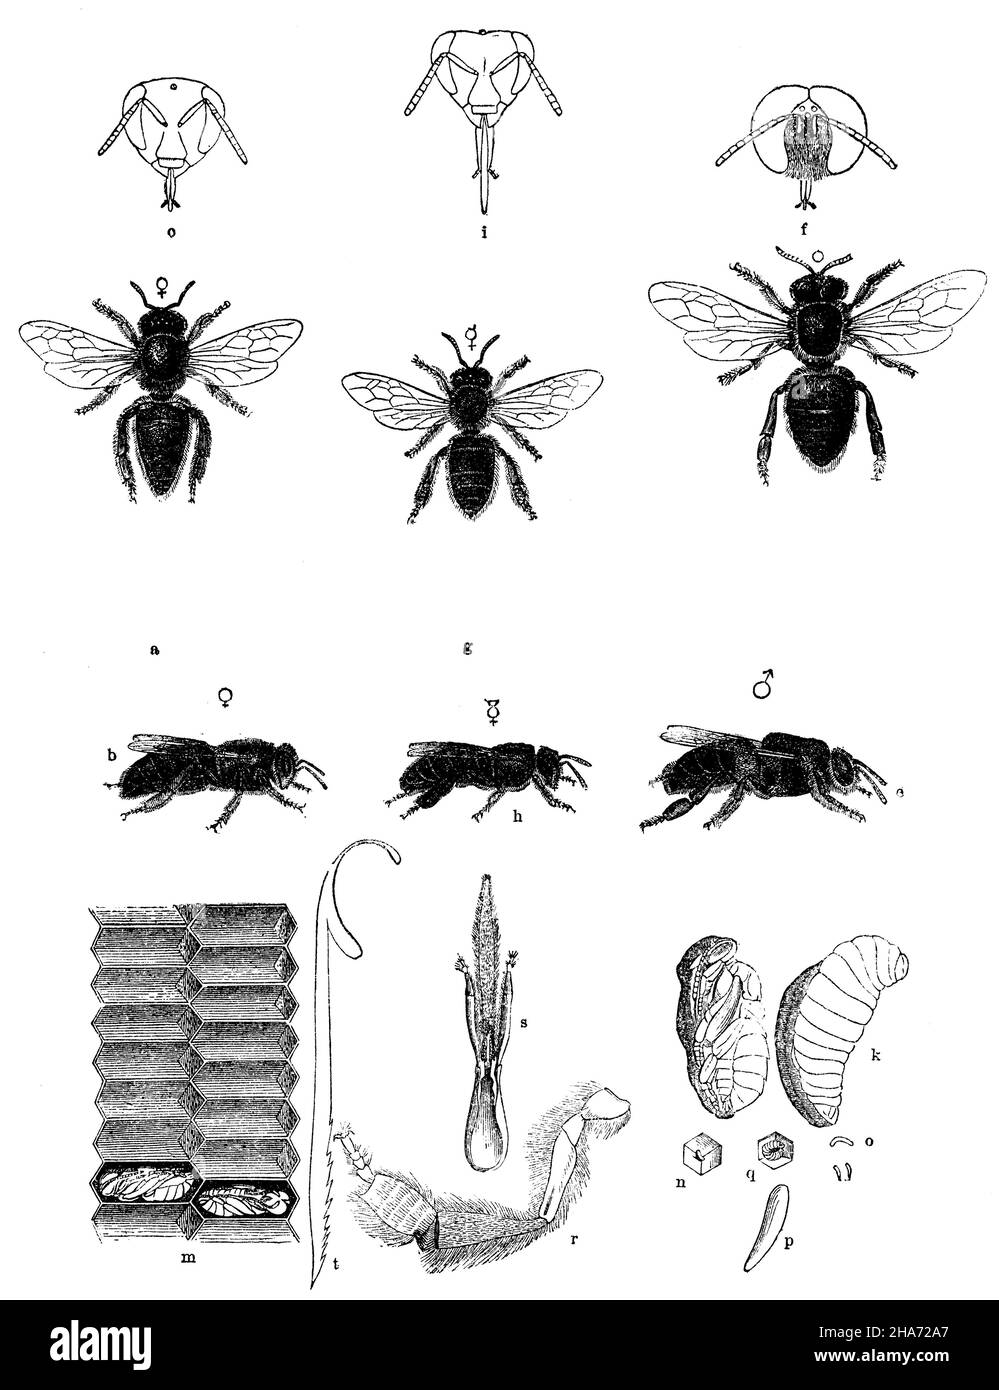 Abeille a, b) femelle, c) tête, d, e) mâle,f) tête, g, h) abeille asexuée, i) tête, k) larve,l) pupa, m) cellules coupées à travers, pupe dans deux cellules, n) fond d'une cellule avec l'oeuf, o) oeufs, p) oeuf fortement agrandi, q) fond de la cellule avec une jeune larve, r) patte postérieure d'un travailleur, s) lèvre inférieure (langue, palpi, menton creux) t) aiguillon, , (livre de zoologie,1872) Banque D'Images